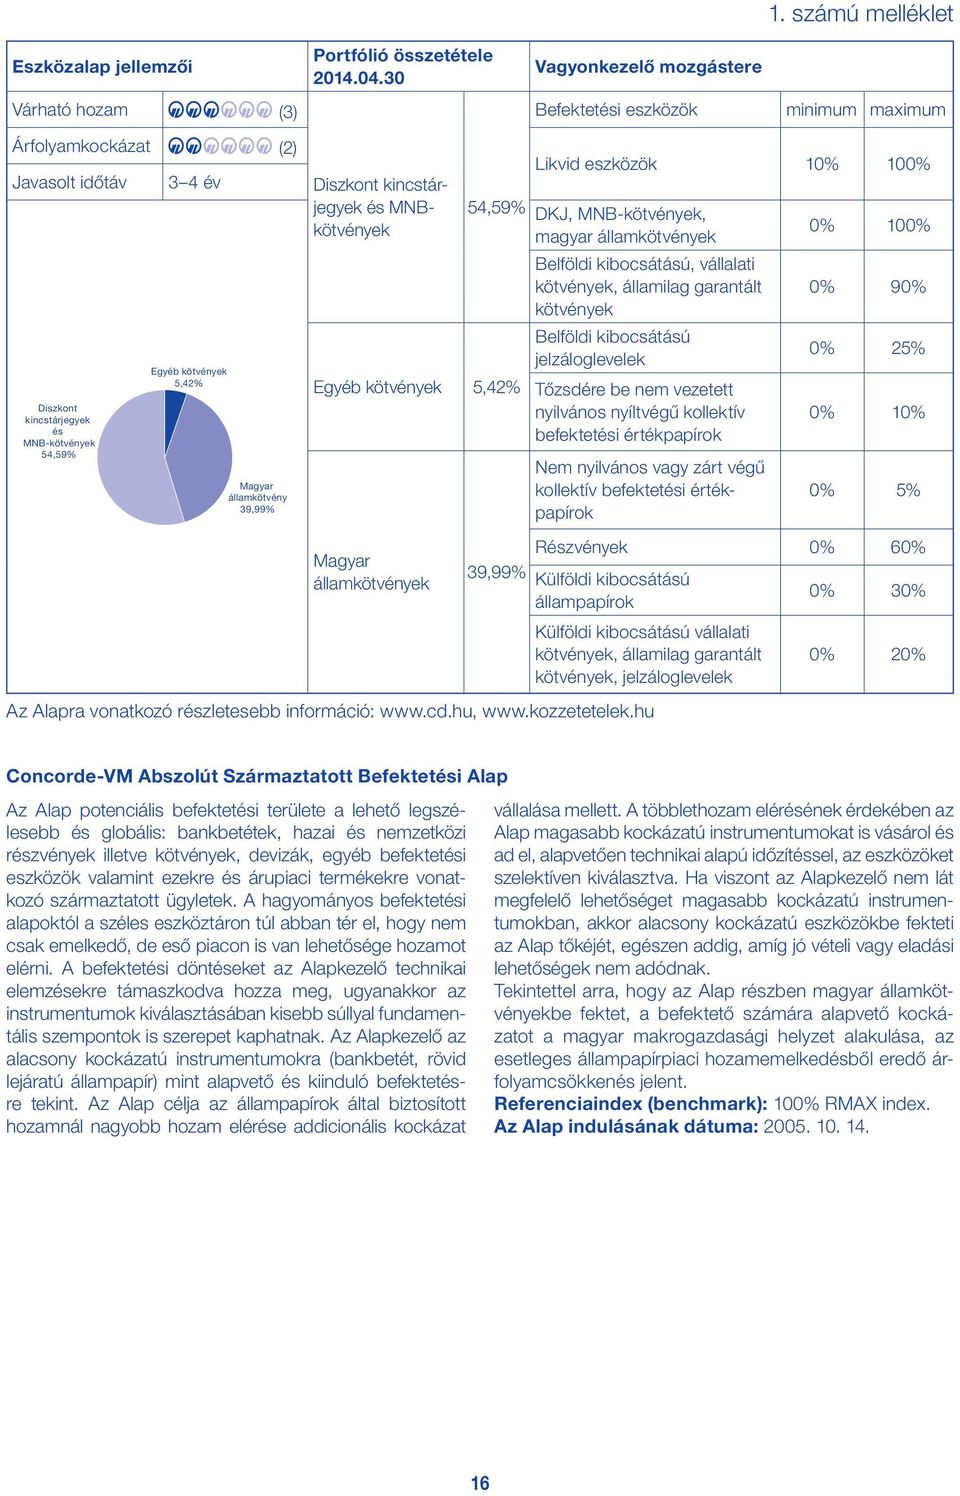 MNBkötvények 54,59% Egyéb kötvények 5,42% Likvid eszközök 10% 100% DKJ, MNB-kötvények, magyar államkötvények Belföldi kibocsátású, vállalati kötvények, államilag garantált kötvények Belföldi